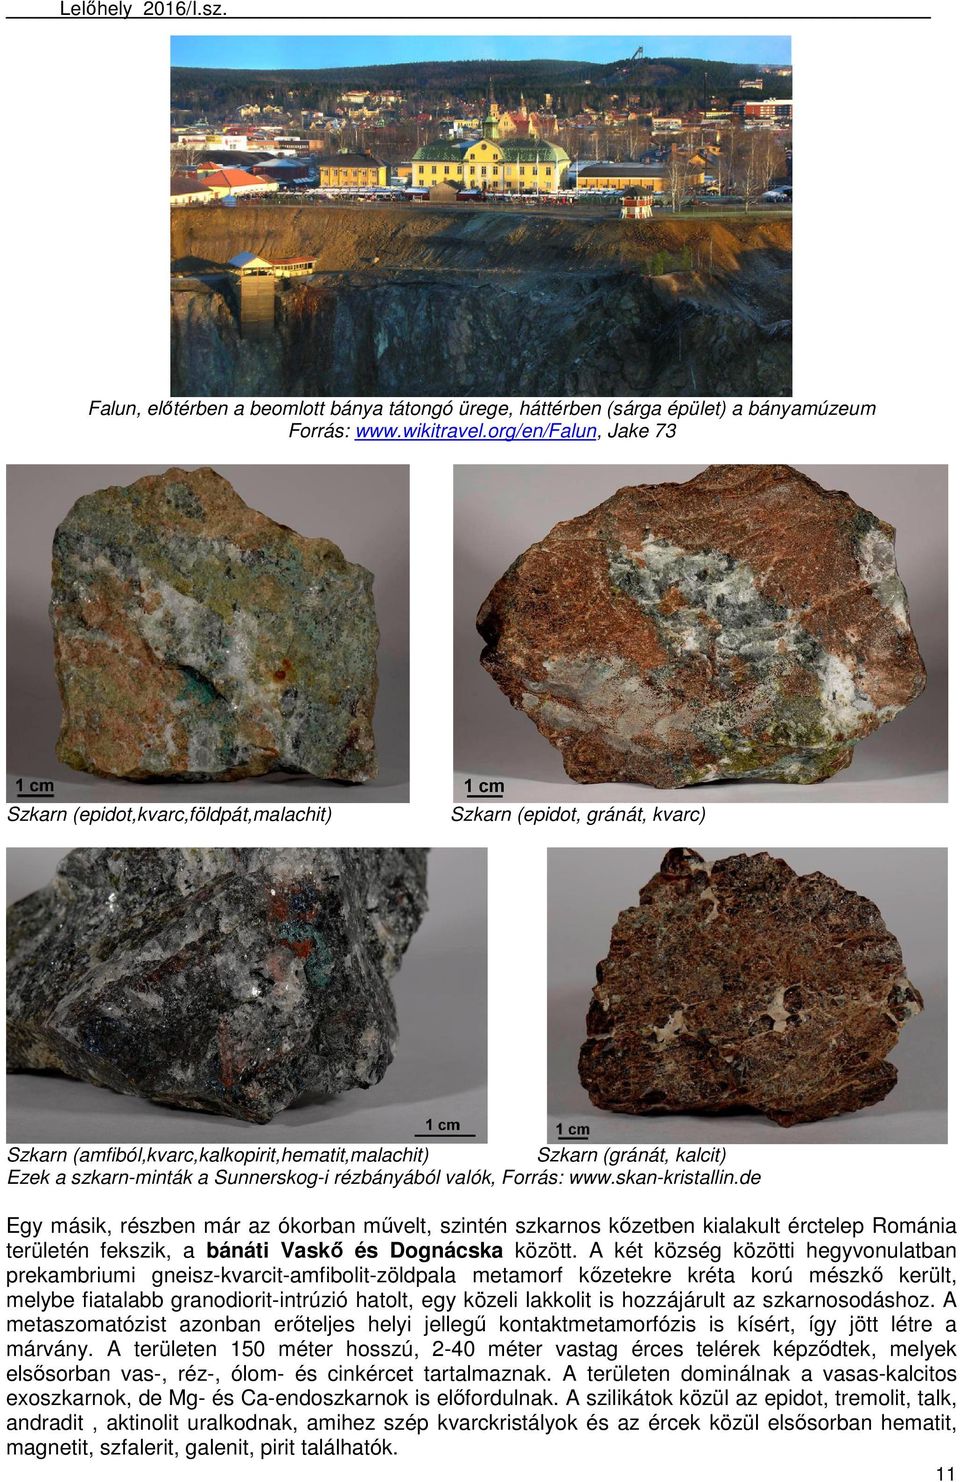 Sunnerskog-i rézbányából valók, Forrás: www.skan-kristallin.